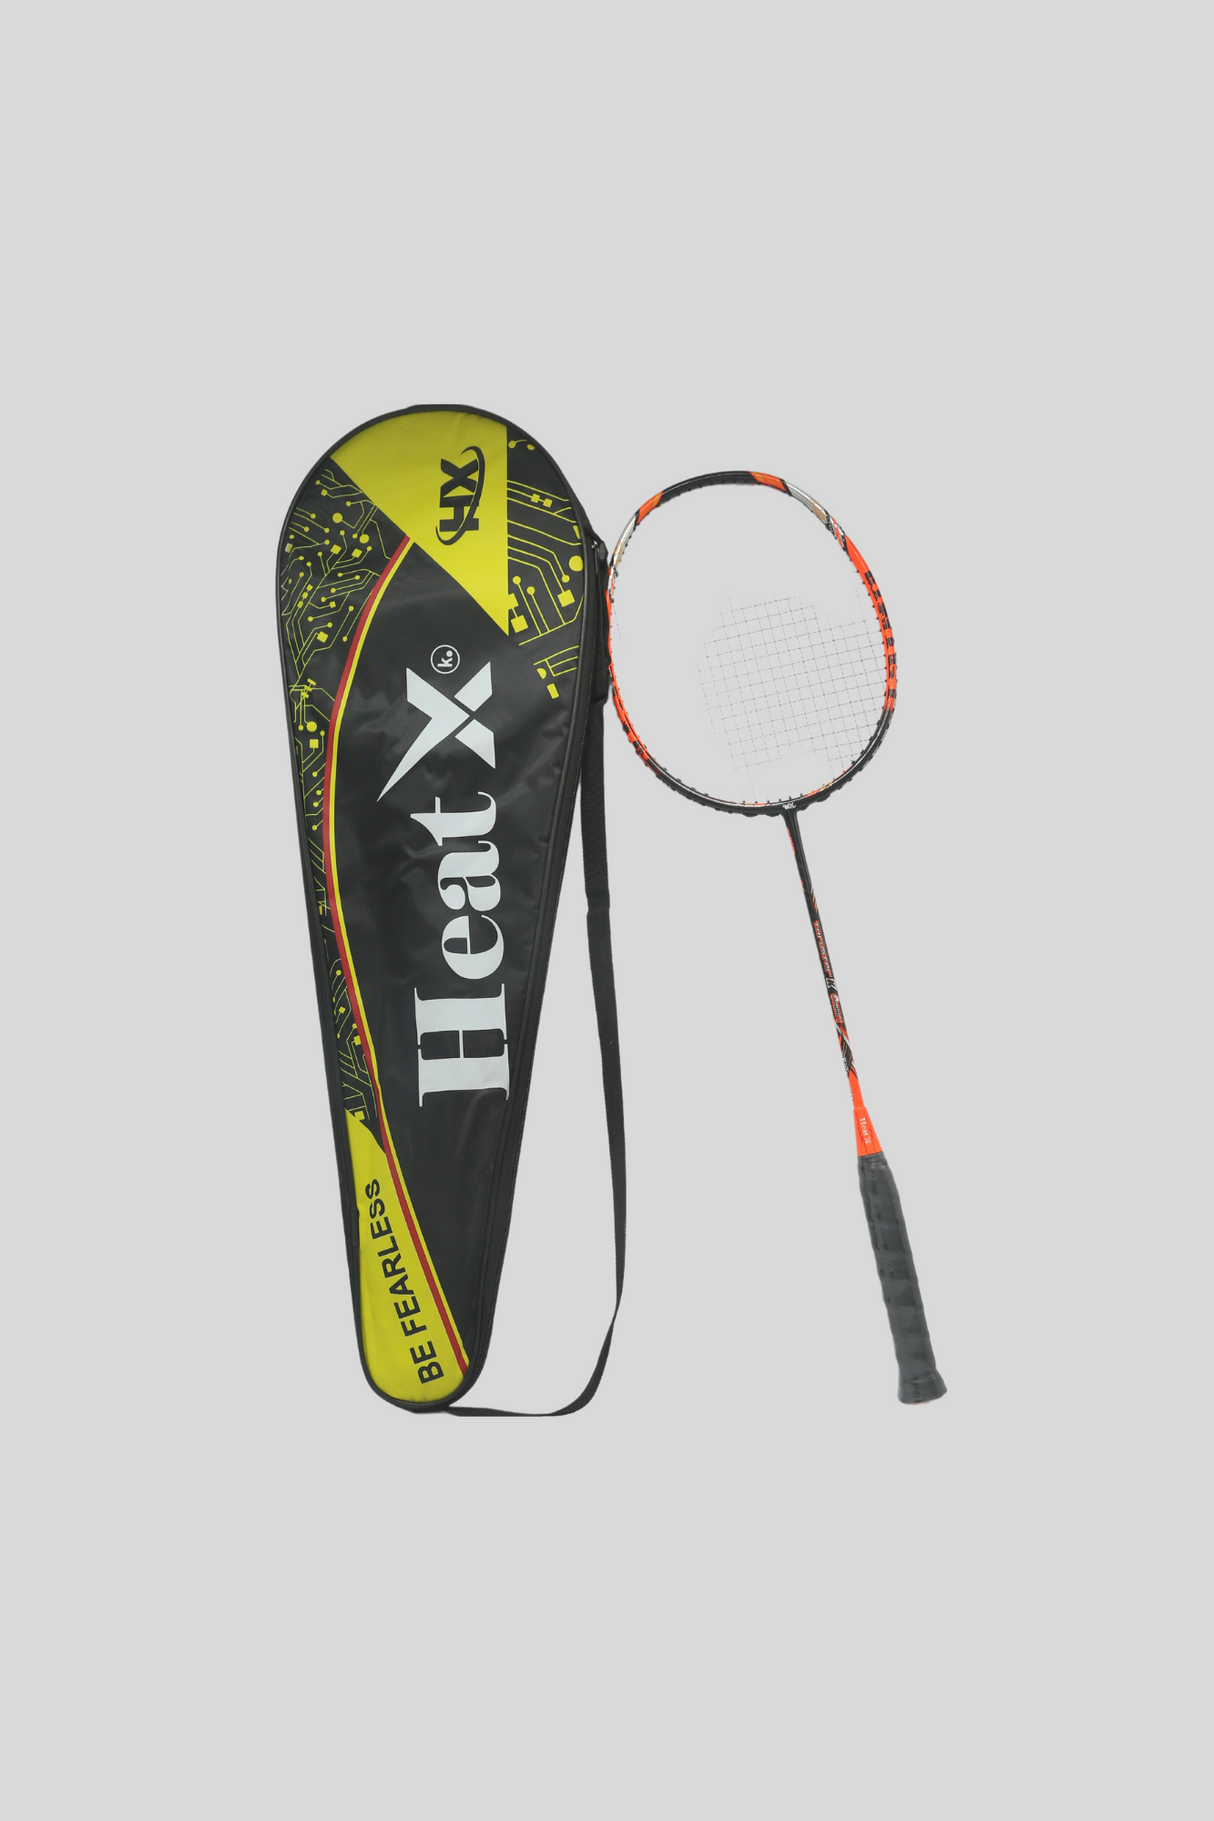 bd racket heatx & gutt